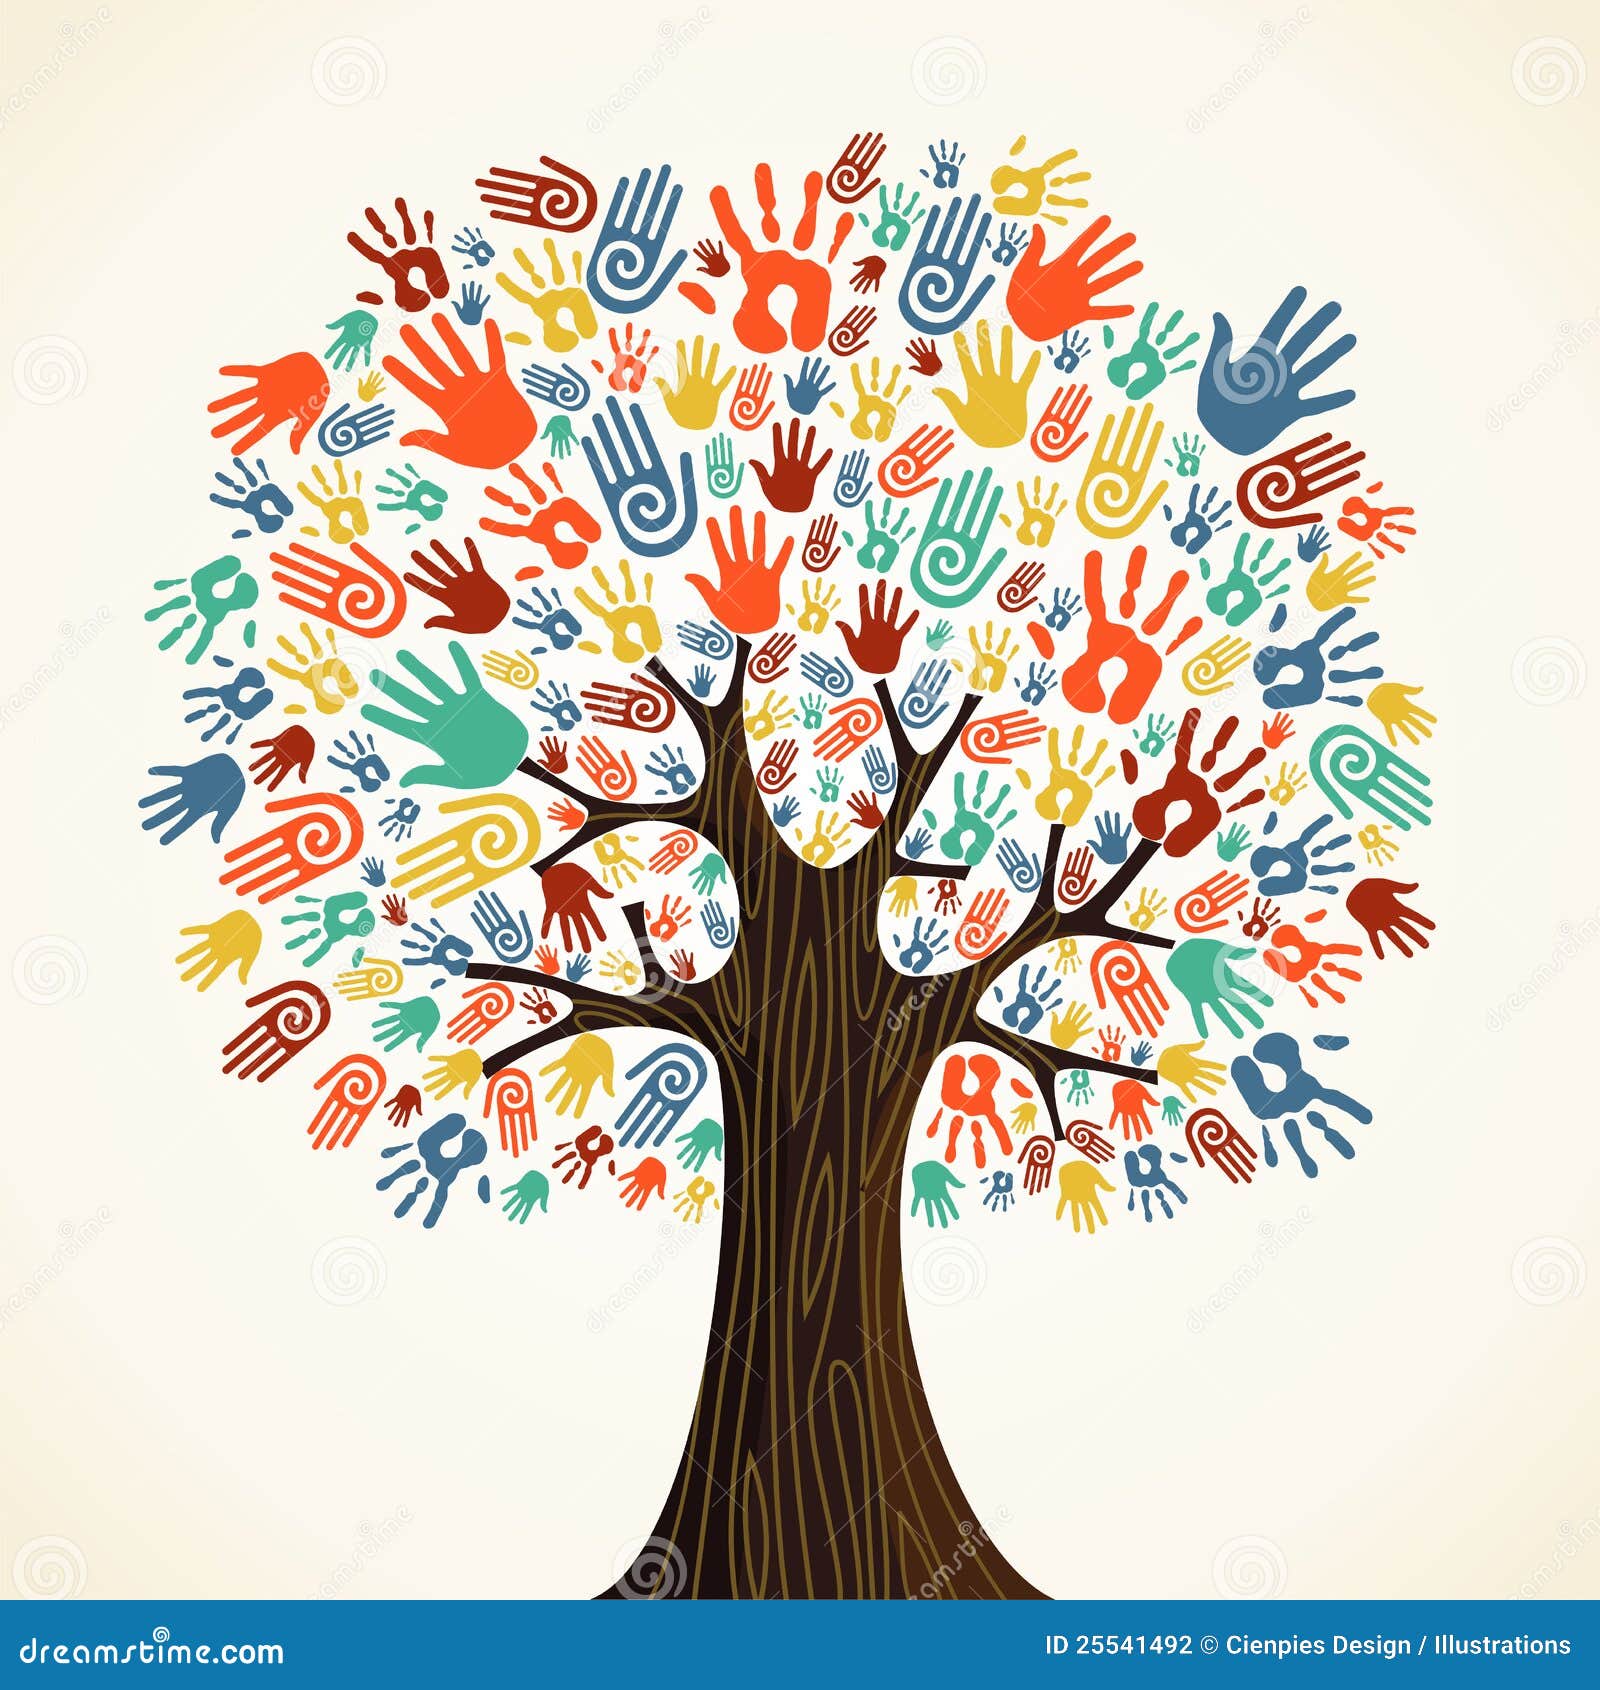  diversity tree hands